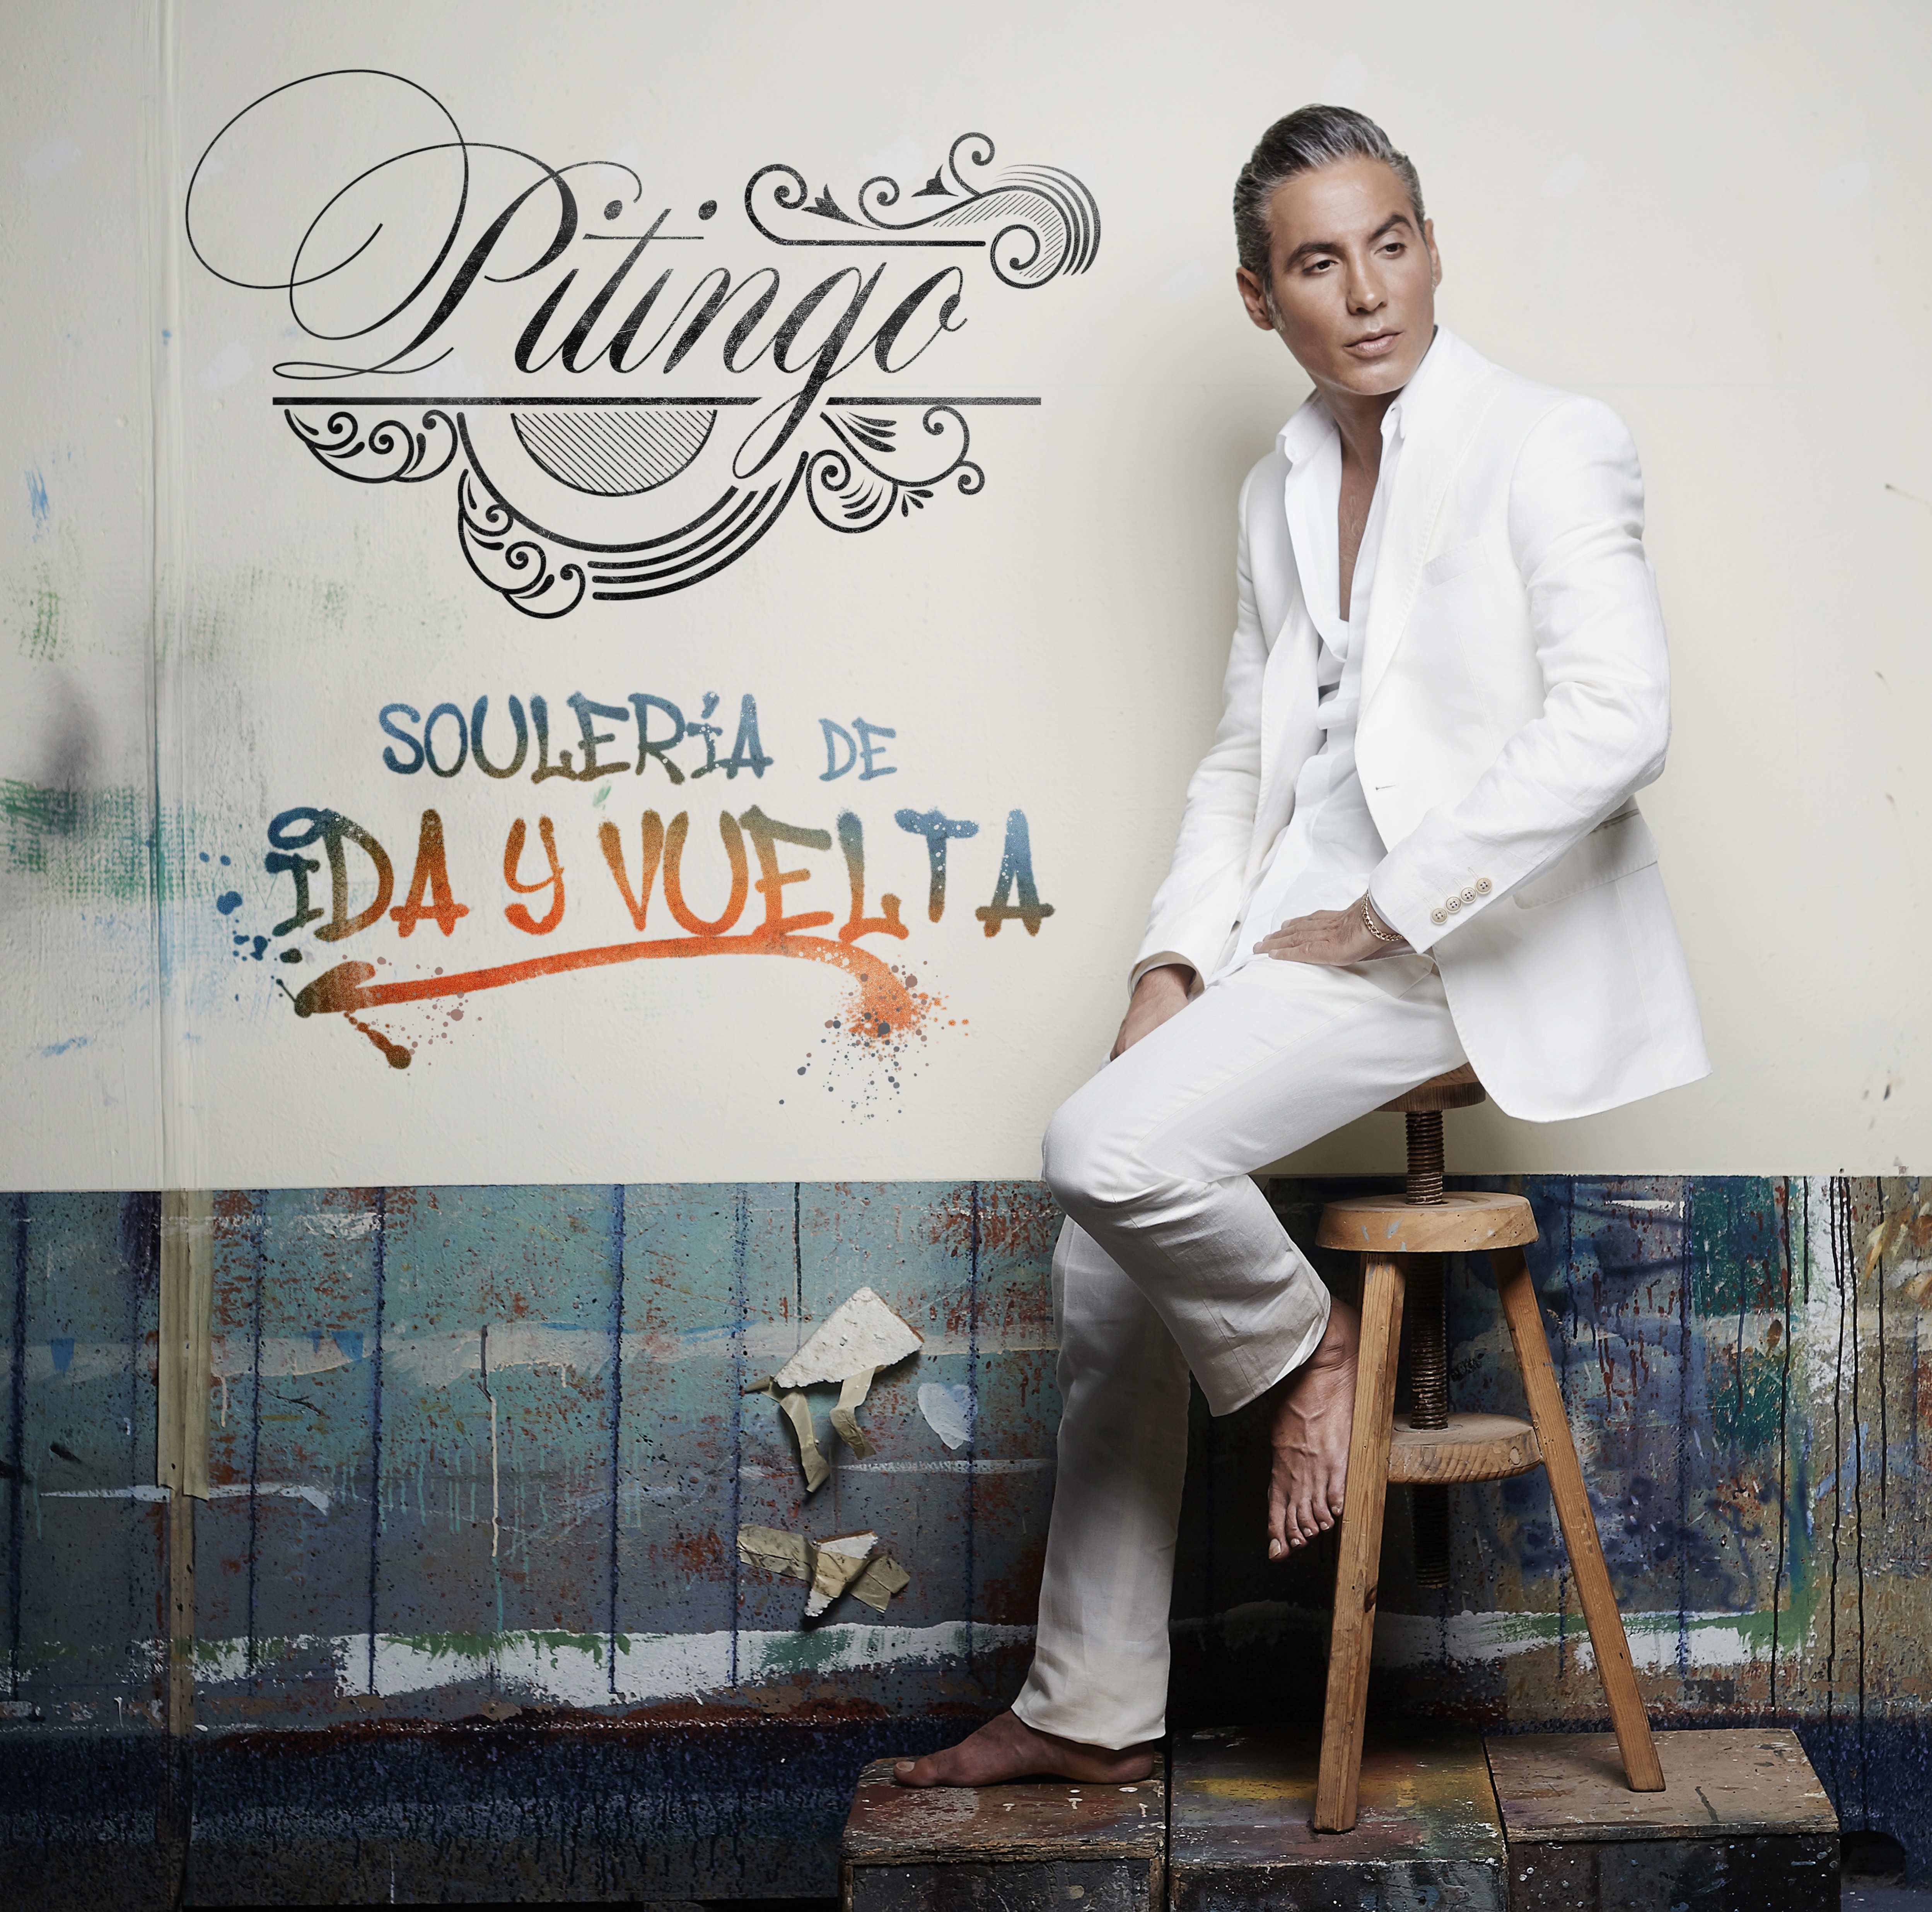 PITINGO llega a México a presentar concierto “Soultería de ida y vuelta”